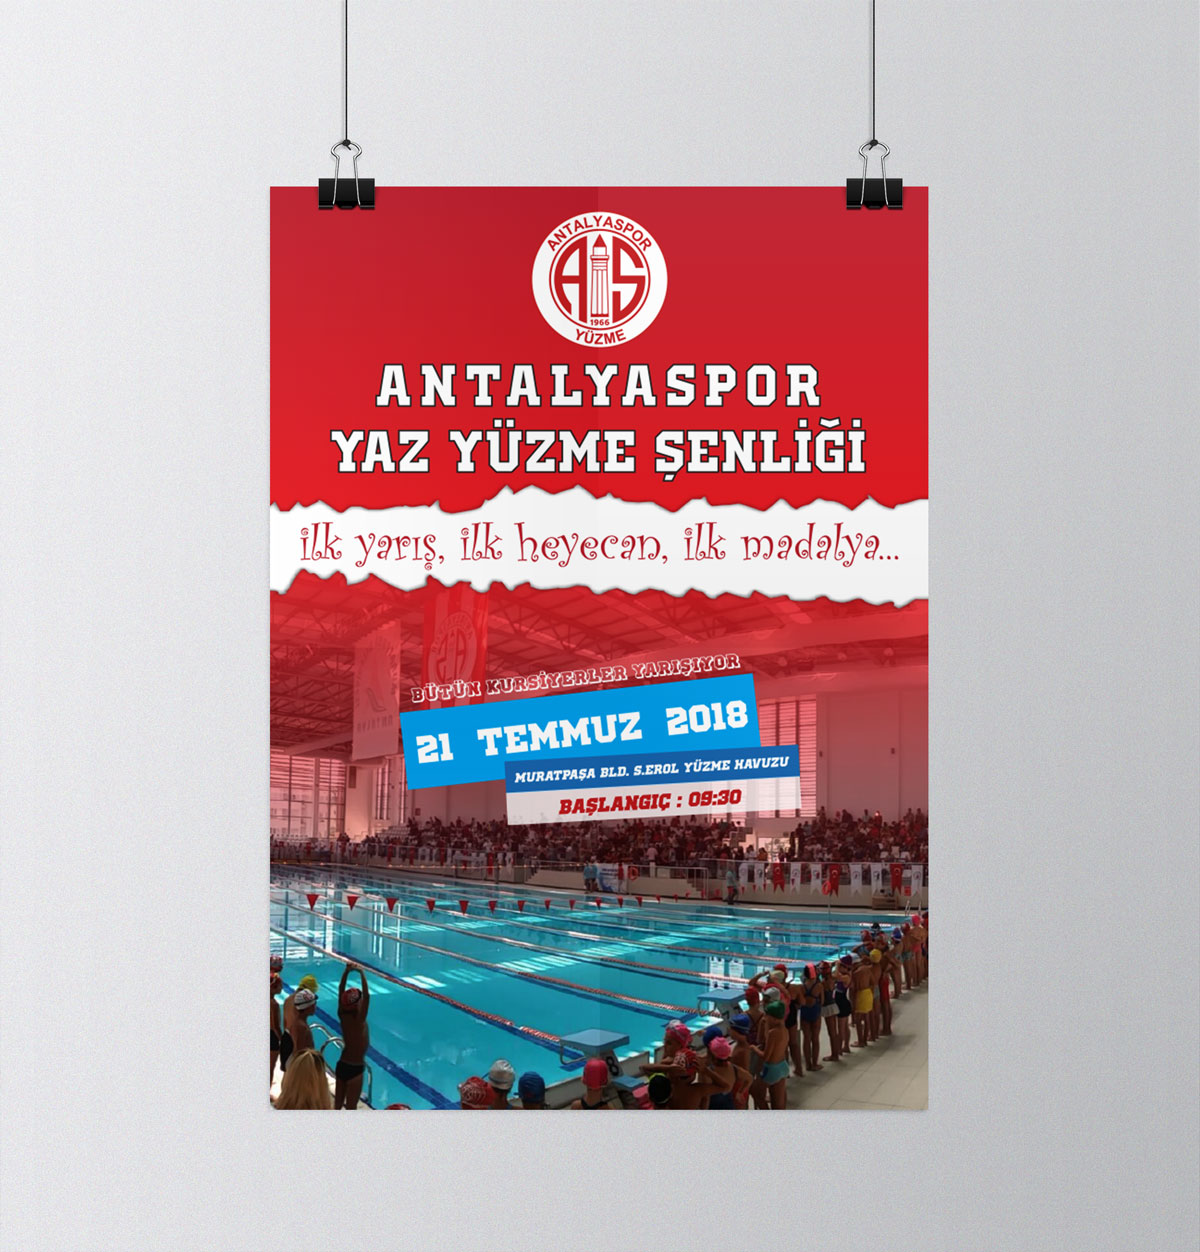 Antalyaspor Yaz Yüzme Şenliği 2018 258